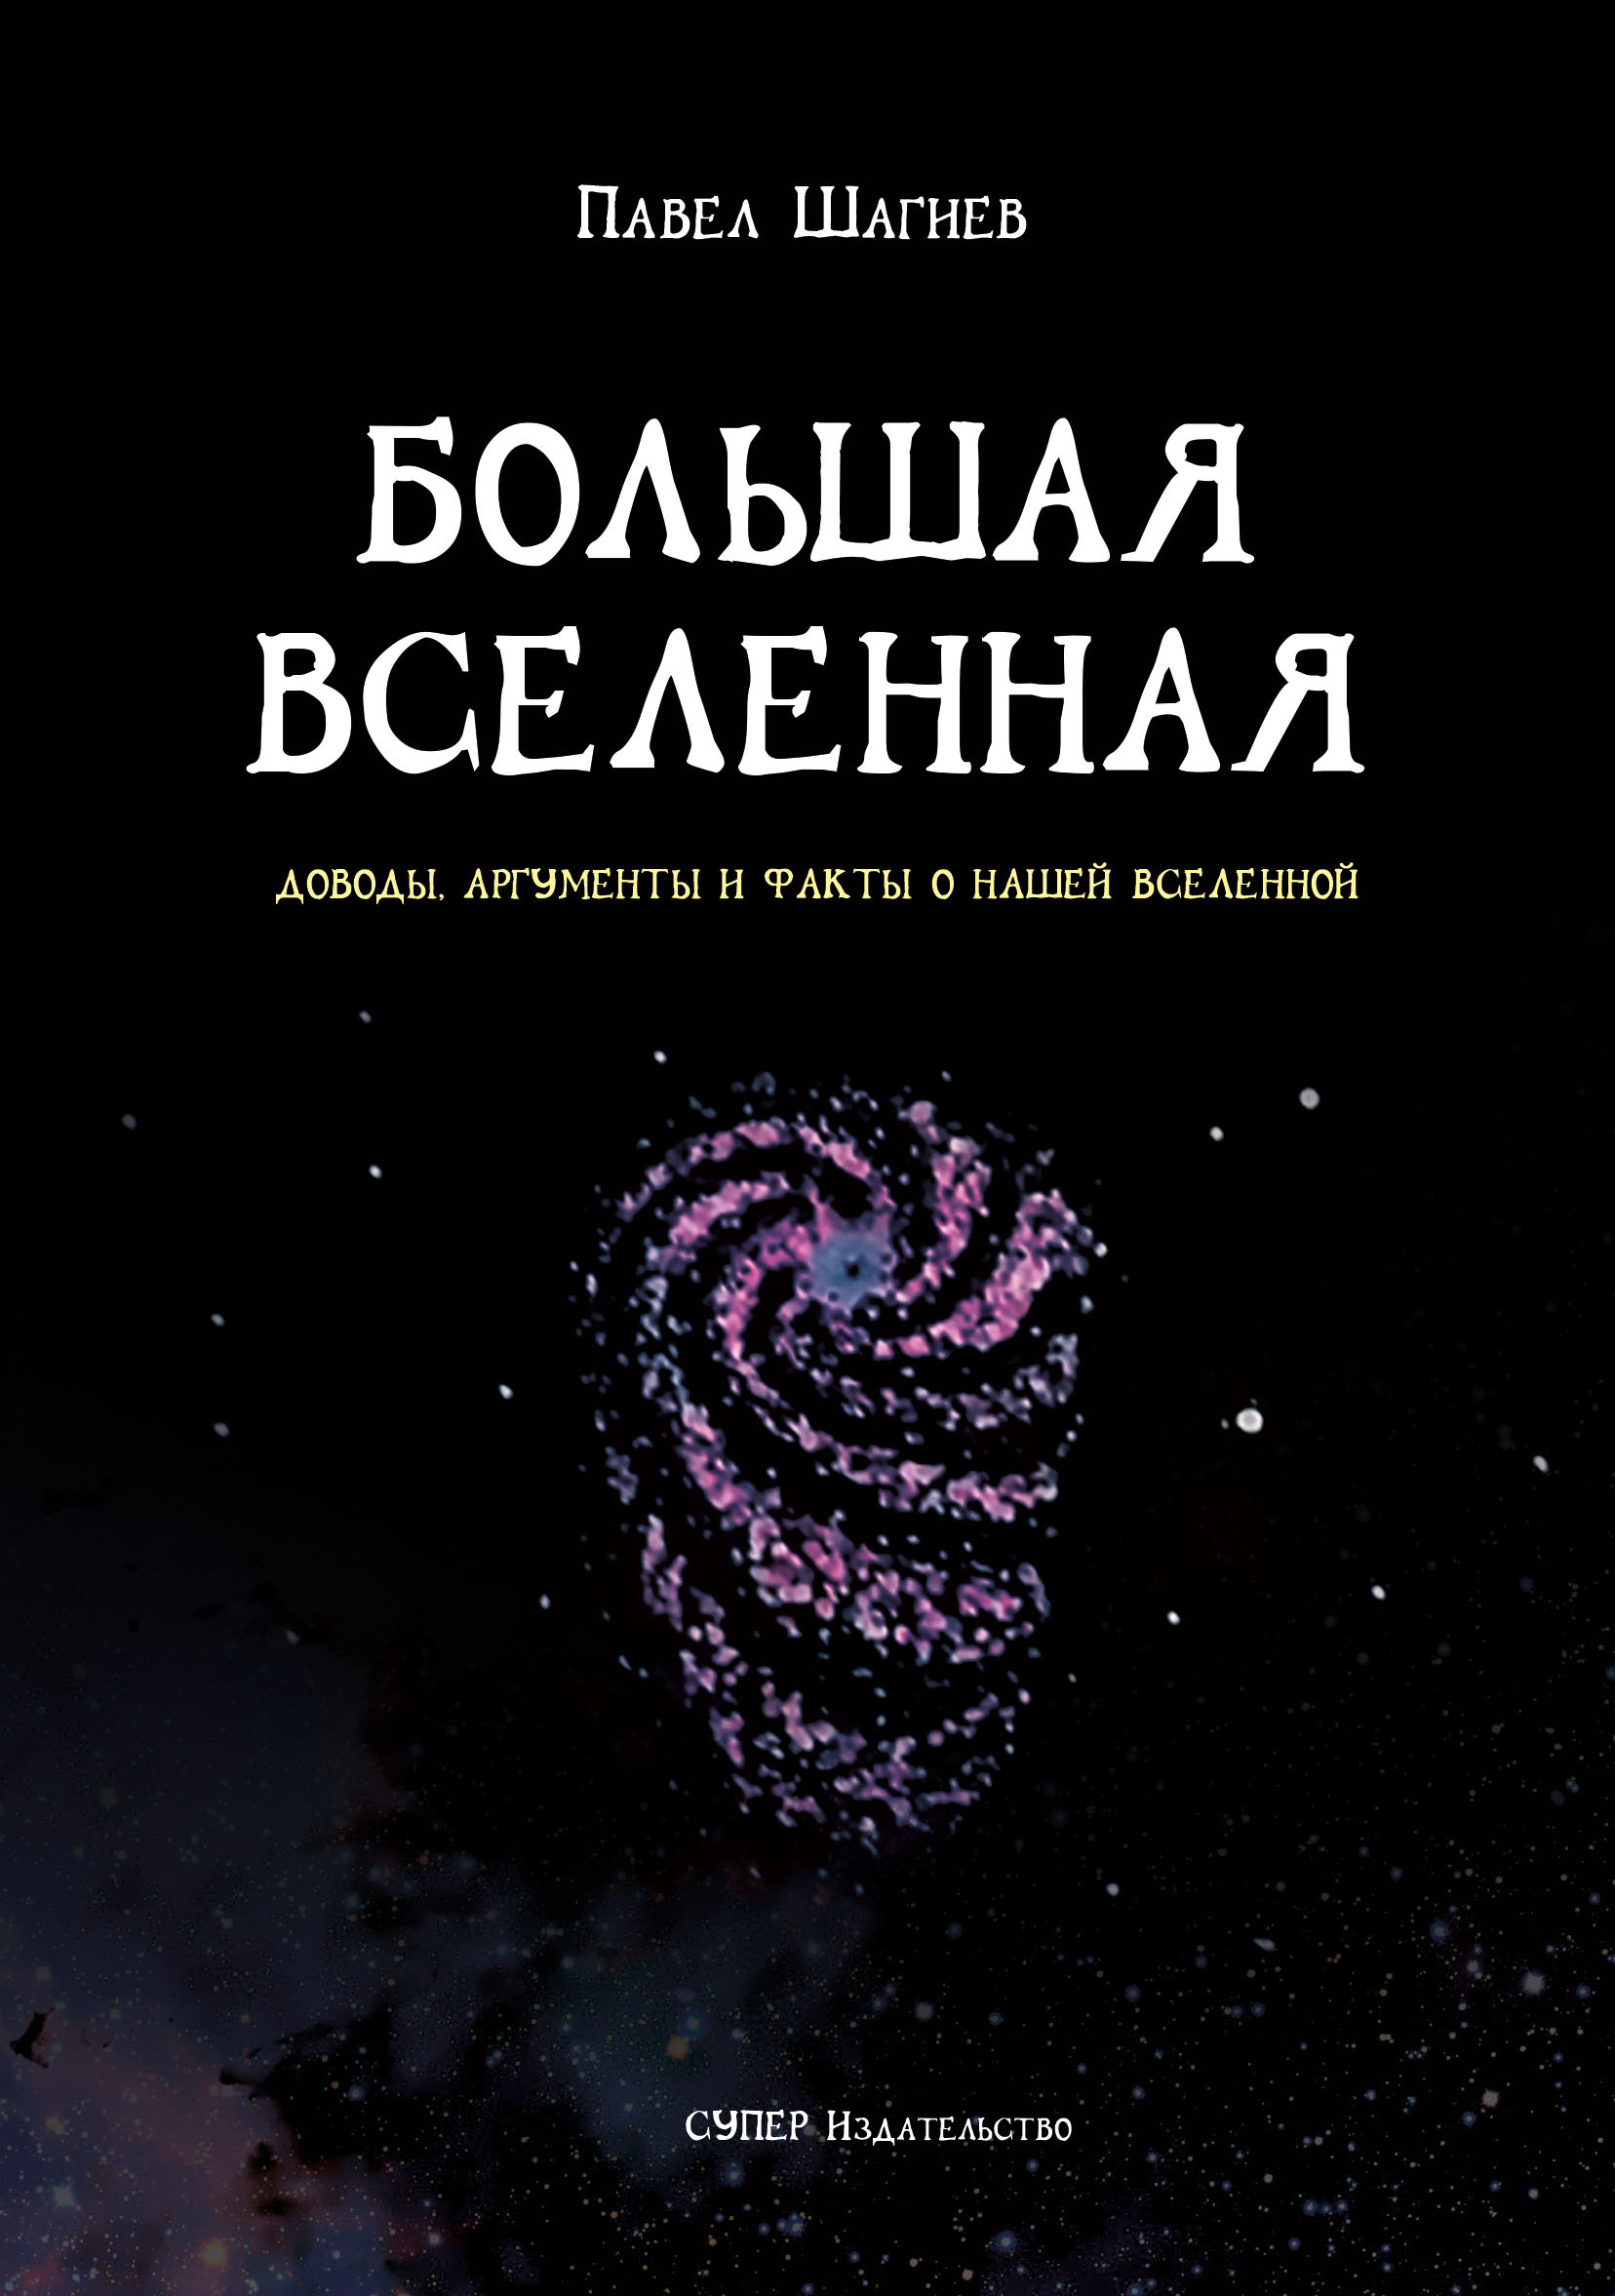 Книга Большая вселенная из серии , созданная Павел Шагиев, может относится к жанру Публицистика: прочее. Стоимость электронной книги Большая вселенная с идентификатором 33572206 составляет 95.00 руб.